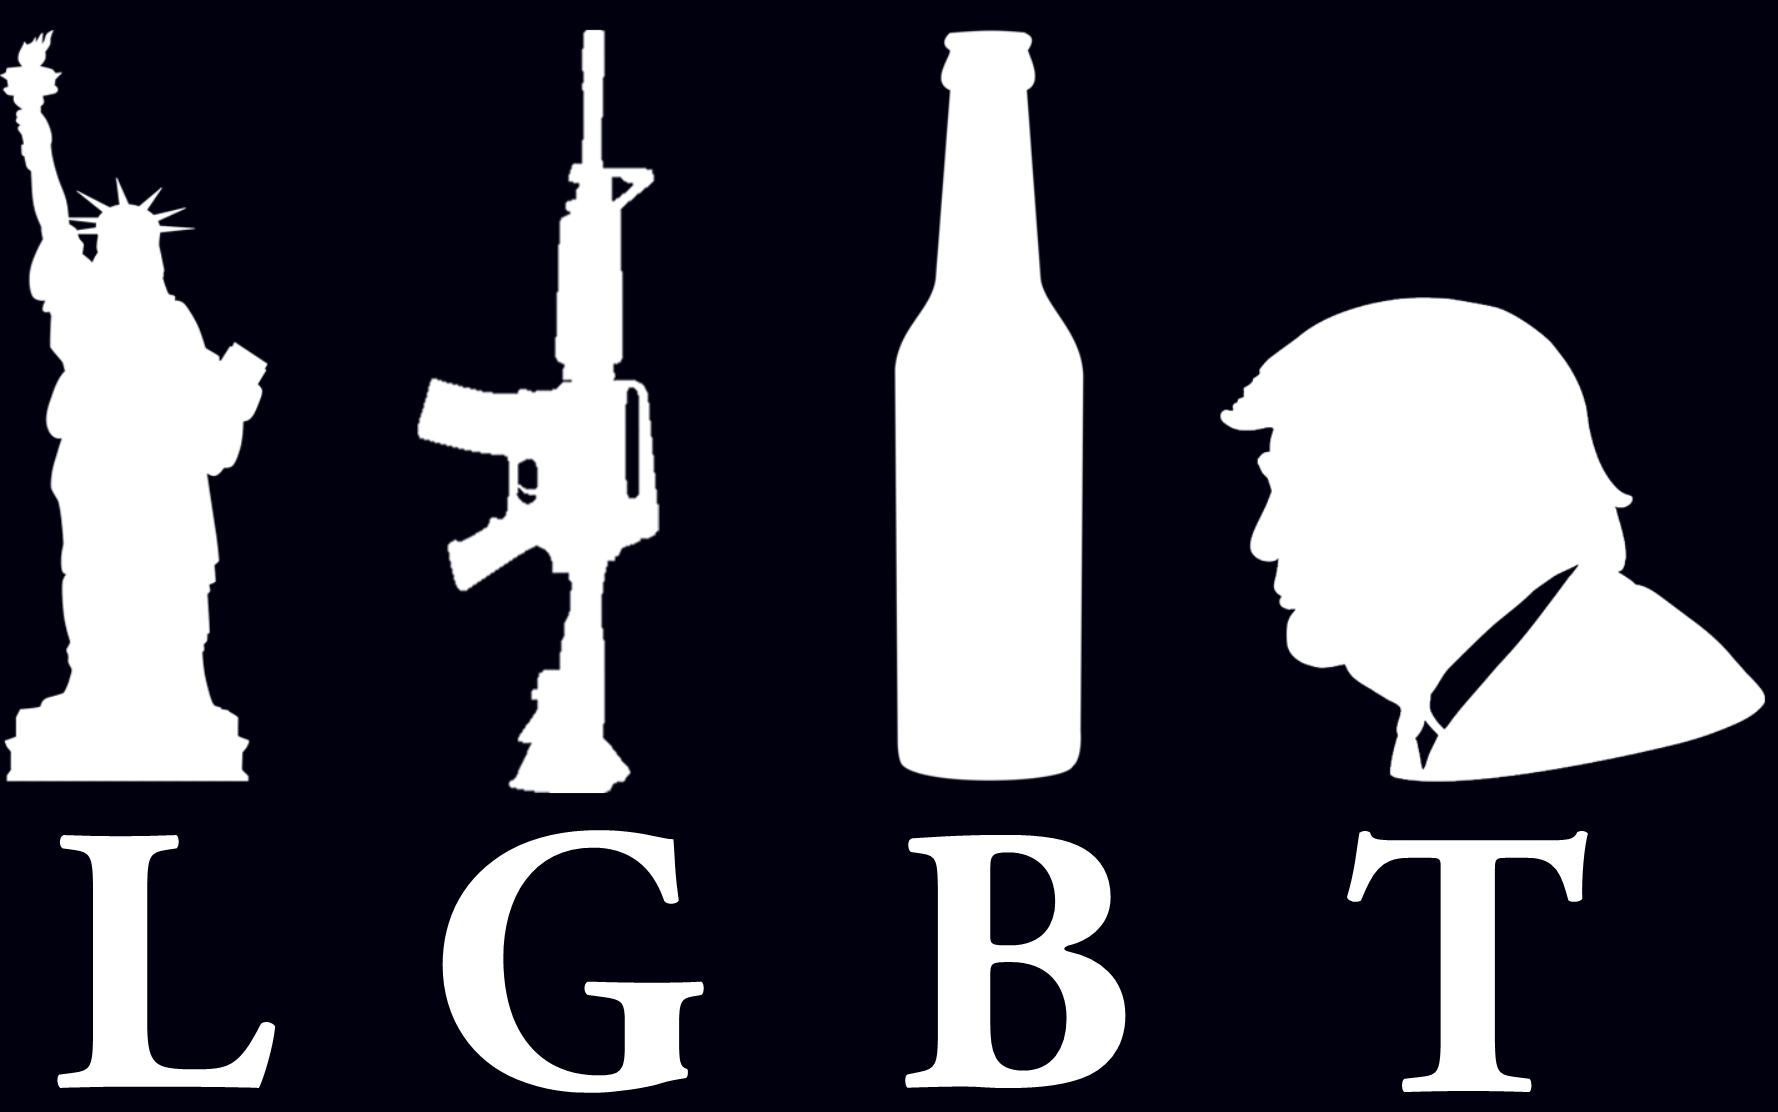 LGBT - Liberty Guns Beer Trump - 6.158"x3.642" Vinyl Decal